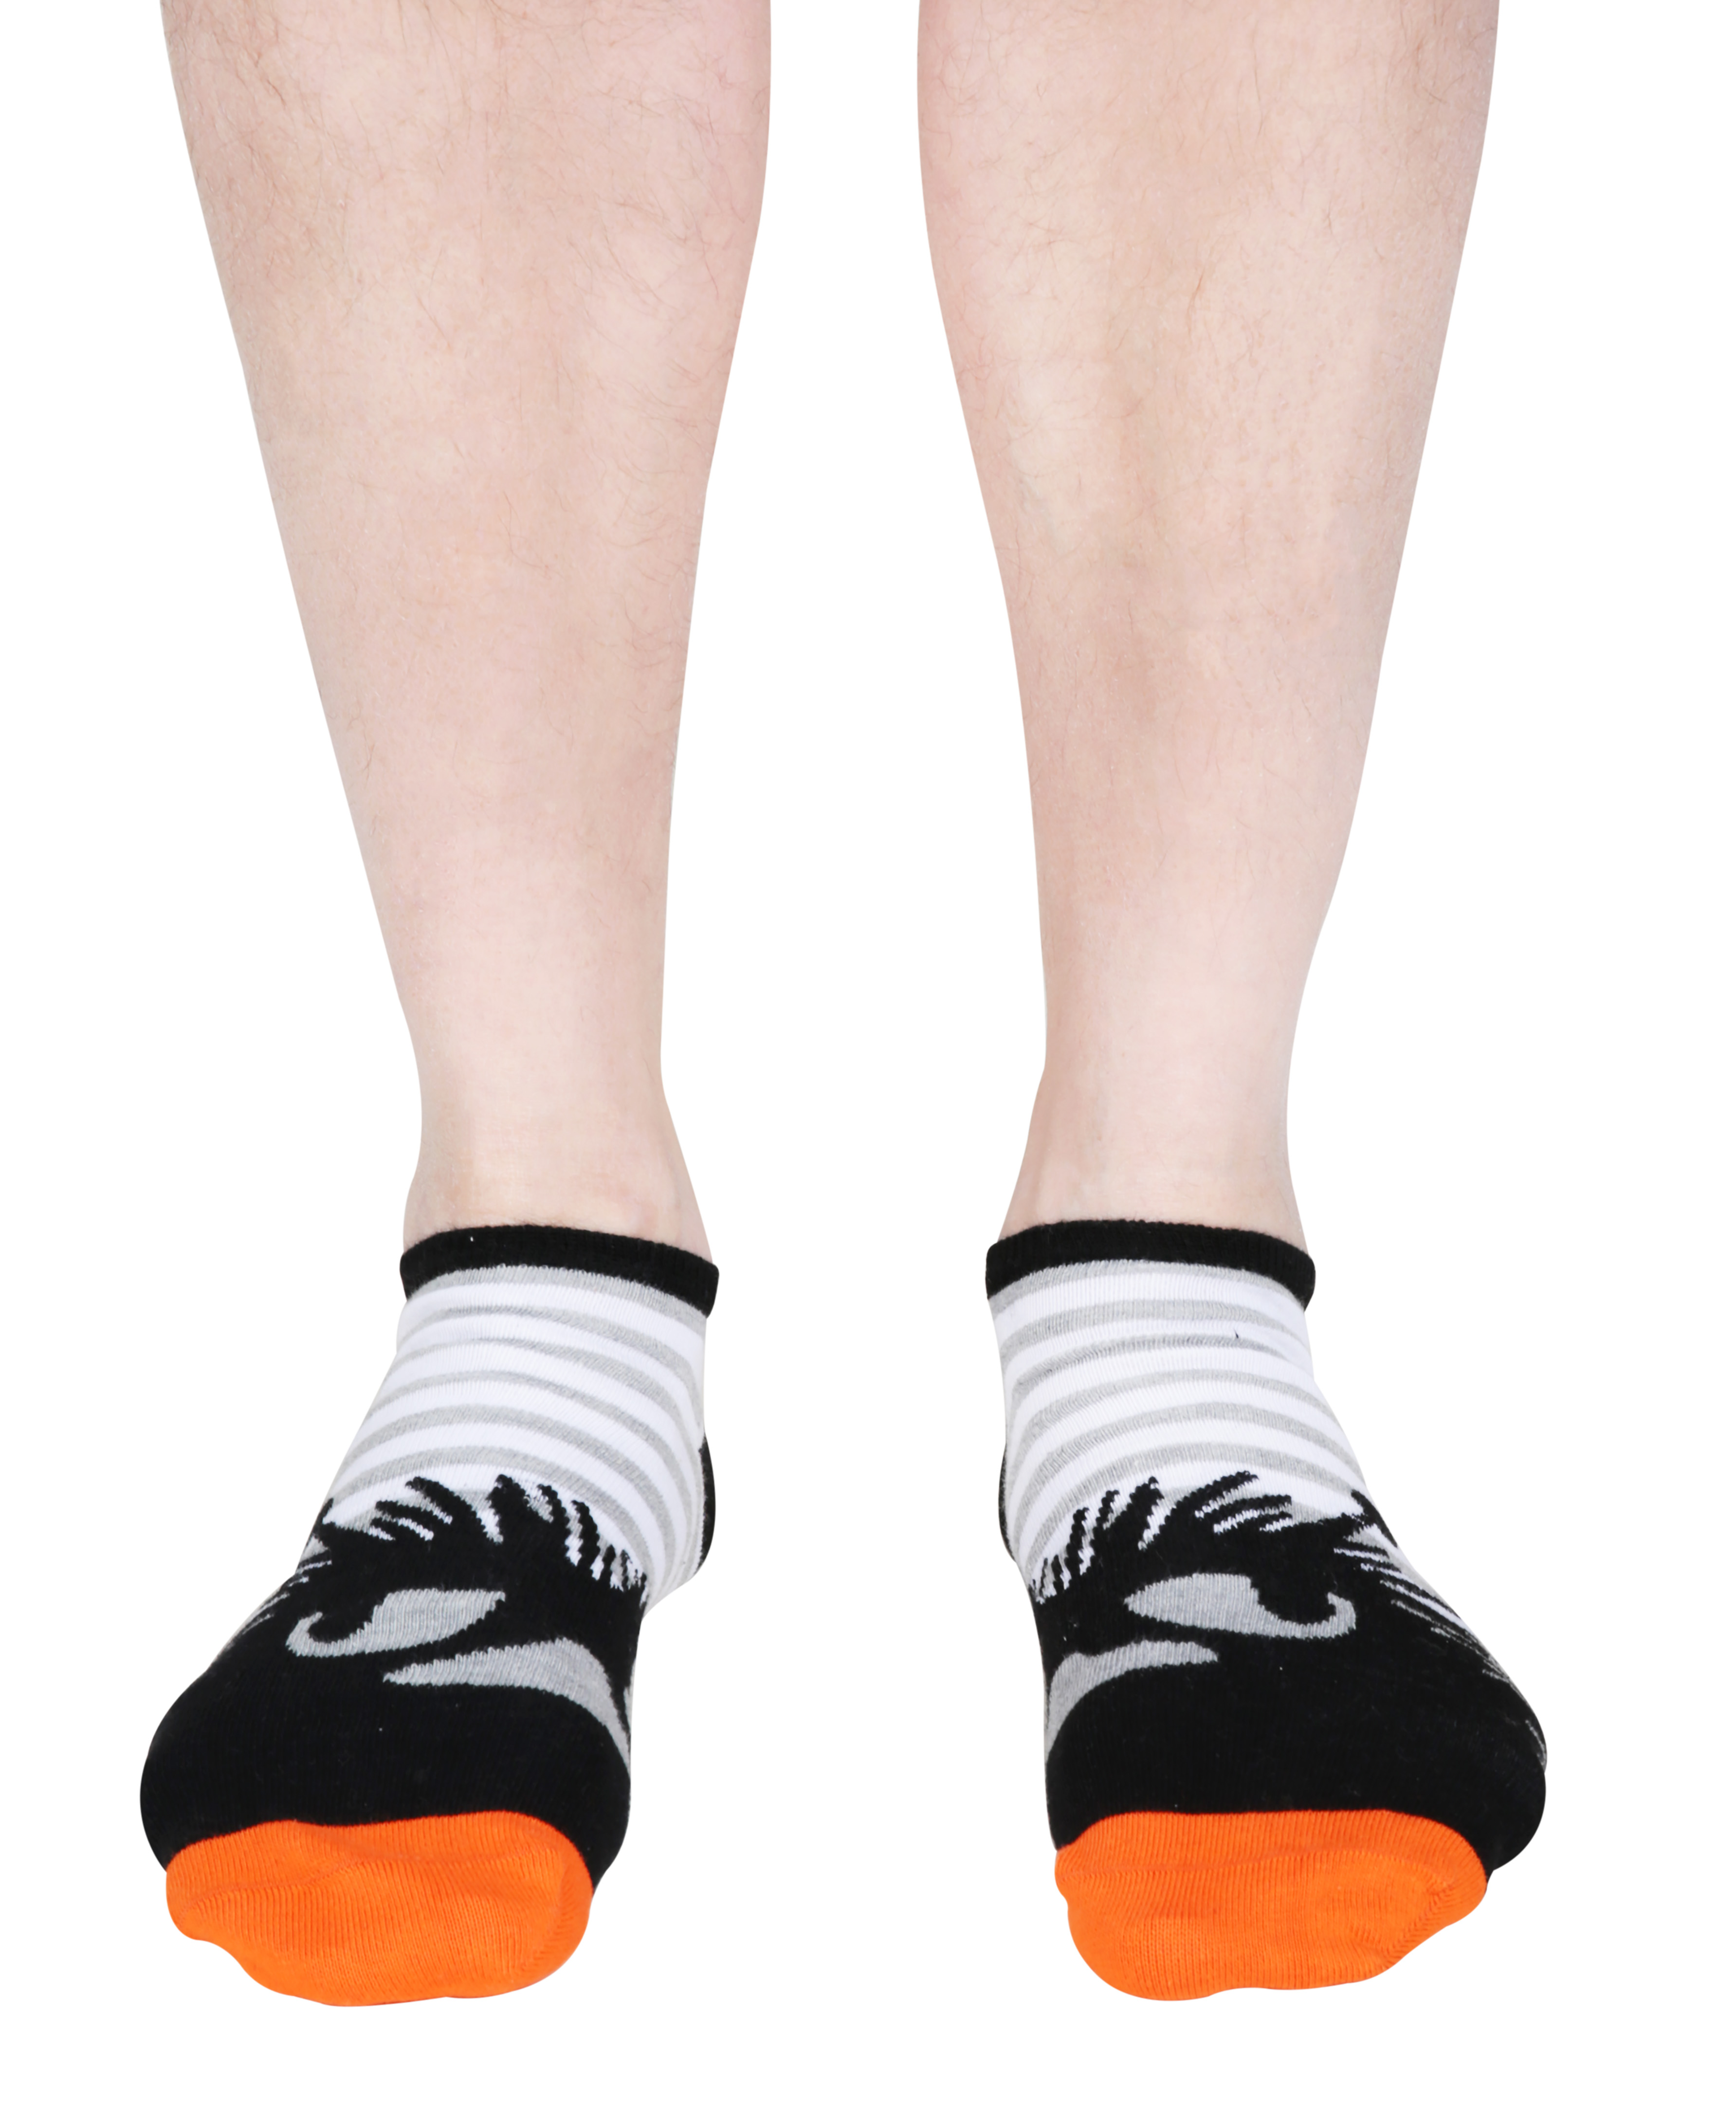 Martinex Moomin Stinky Socks Orange